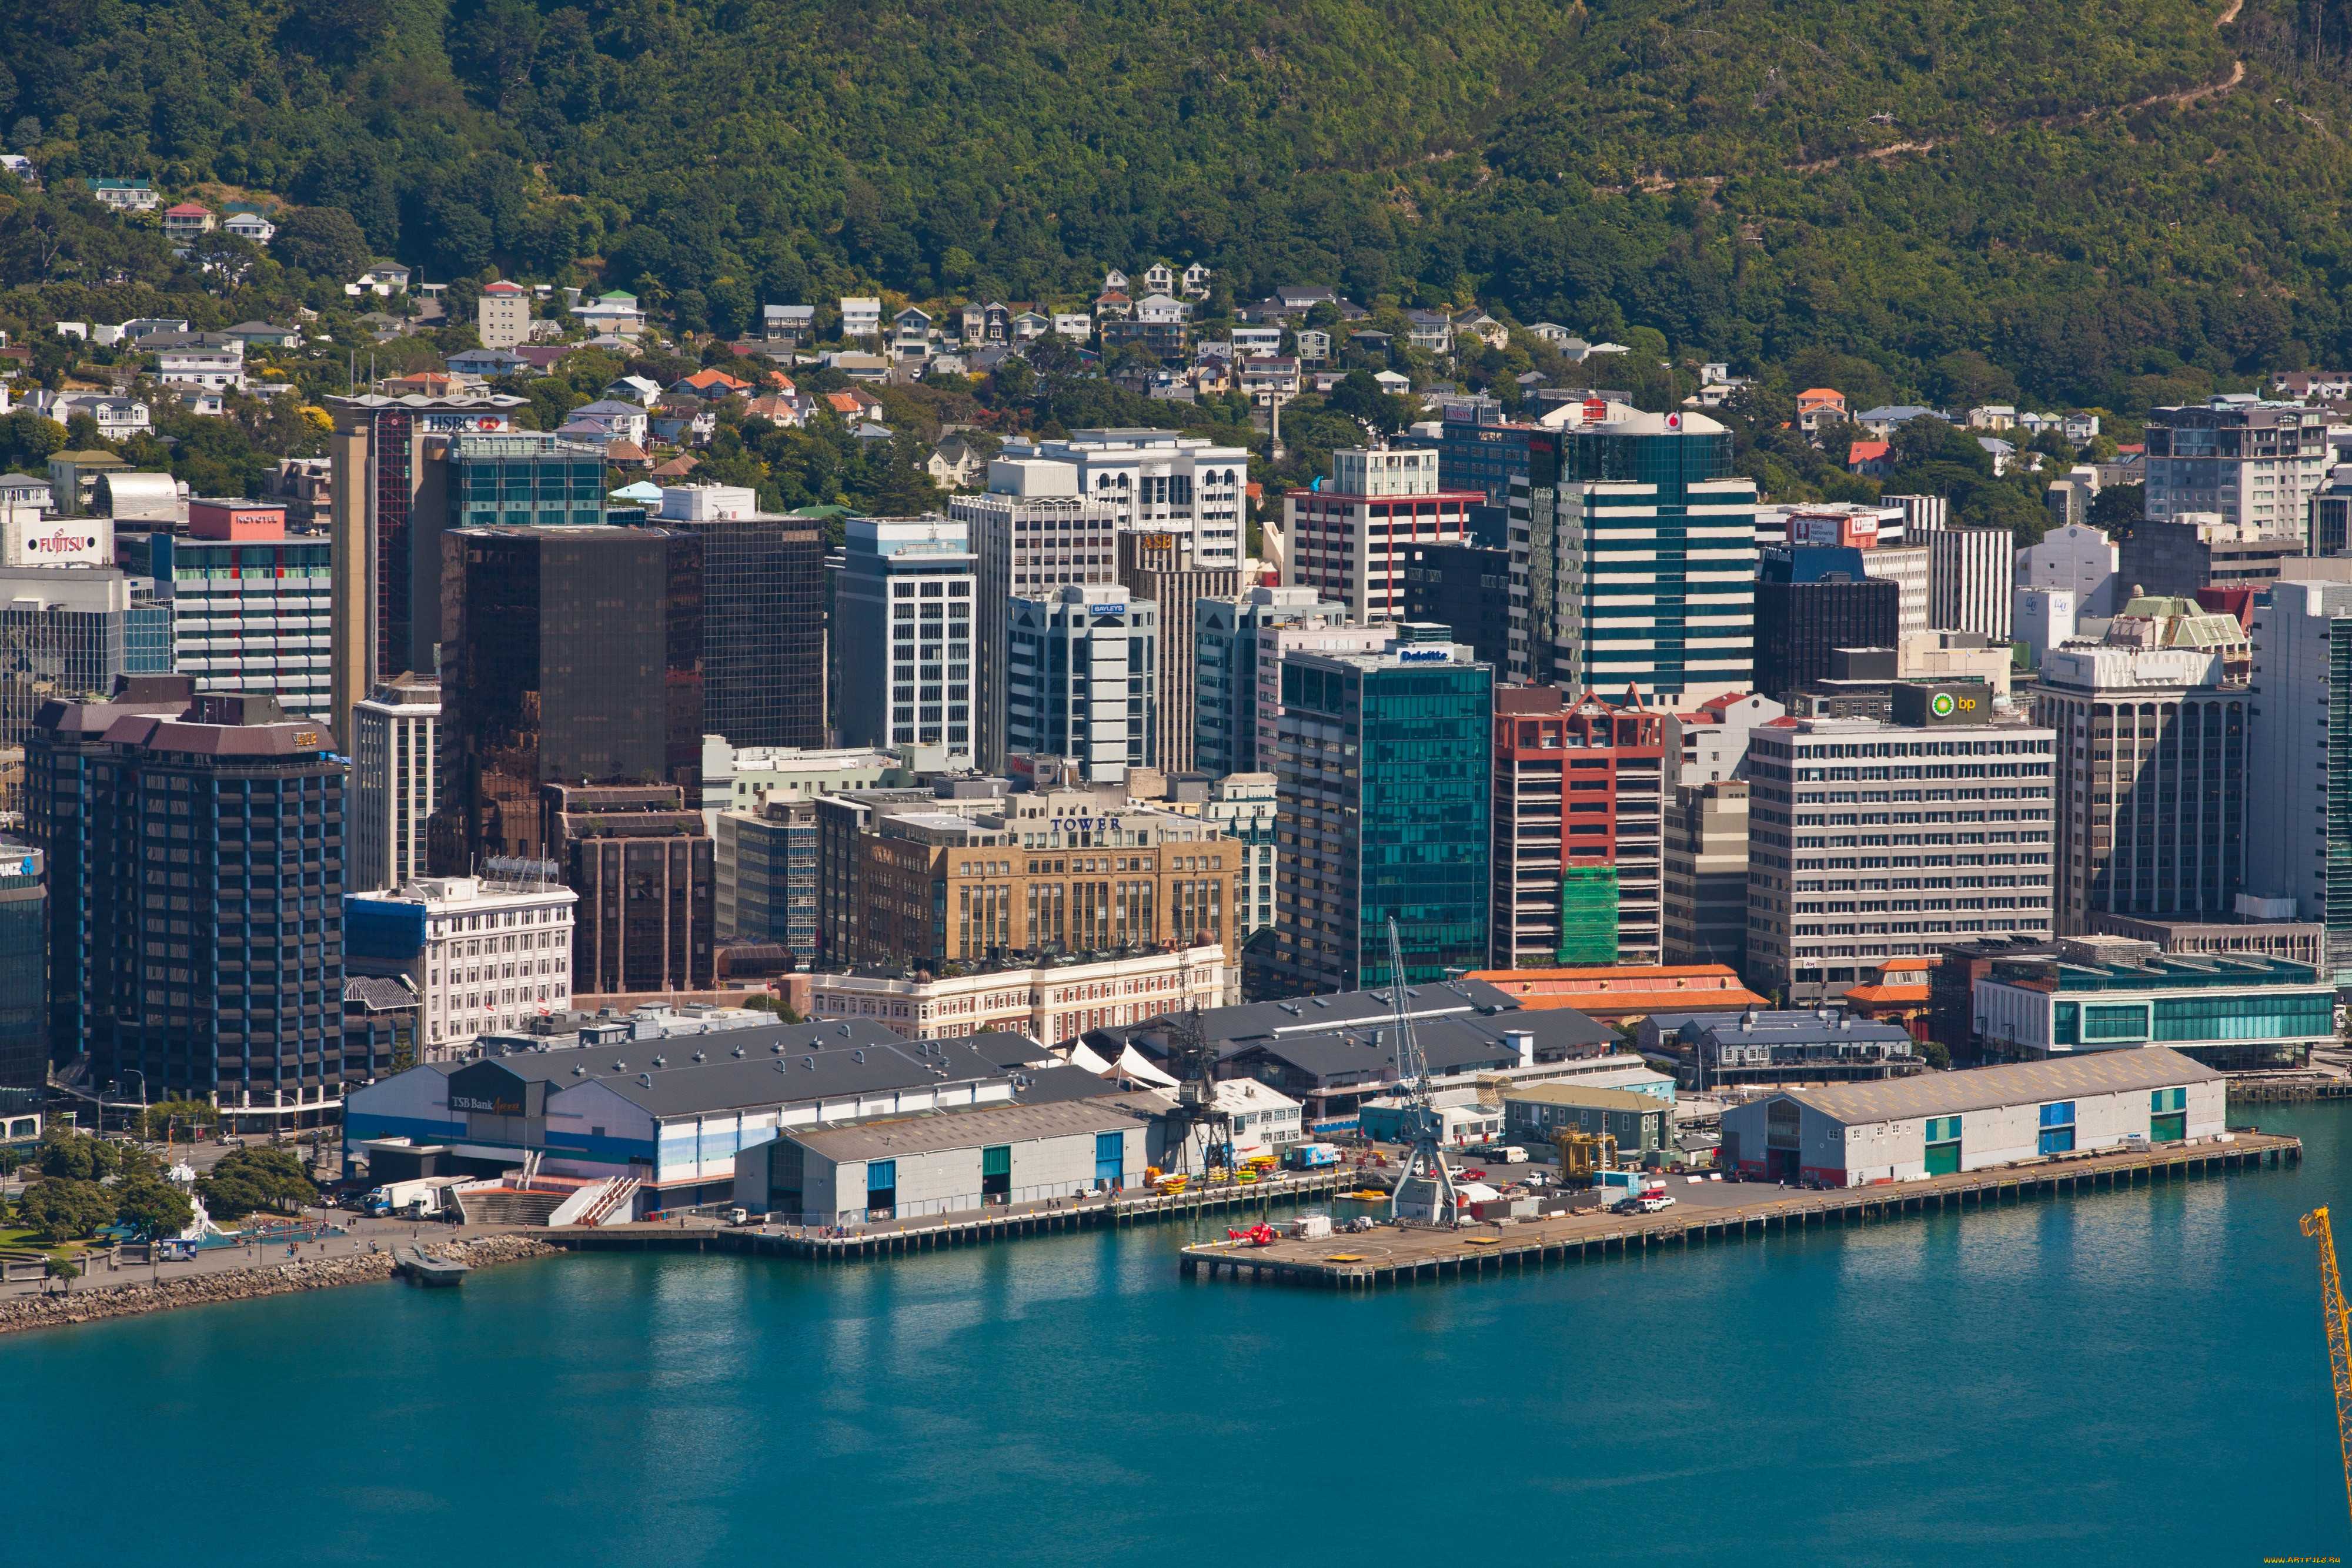 New zealand capital. Веллингтон (новая Зеландия). Столица новой Зеландии (Wellington). Новая Зеландия Веллингтон Окленд. Новая Зеландия Веллингтон улицы.